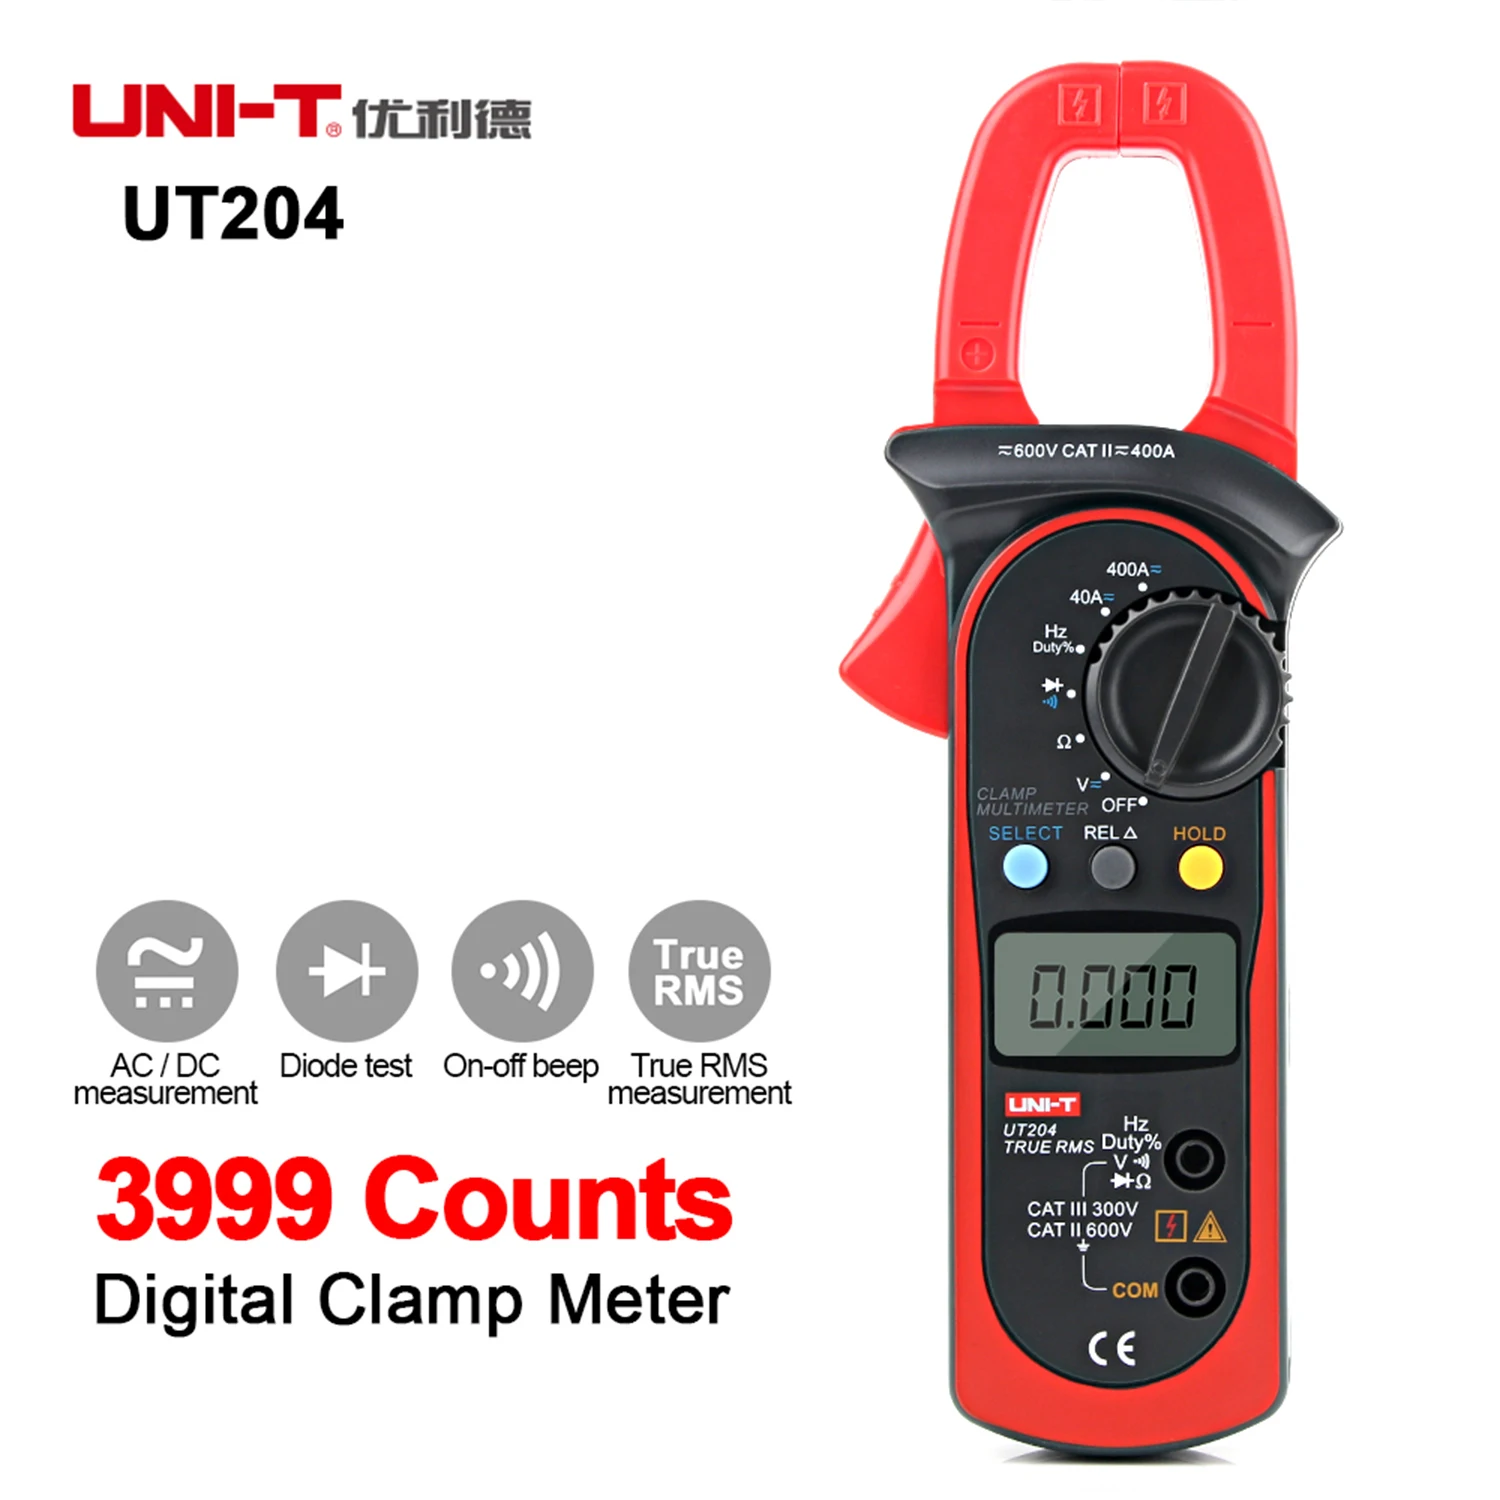 UNI-T Clamp meter Portable high precision multimeter Digital handheld clamp multimeter tester Meter AC DC UT204 /UT204+